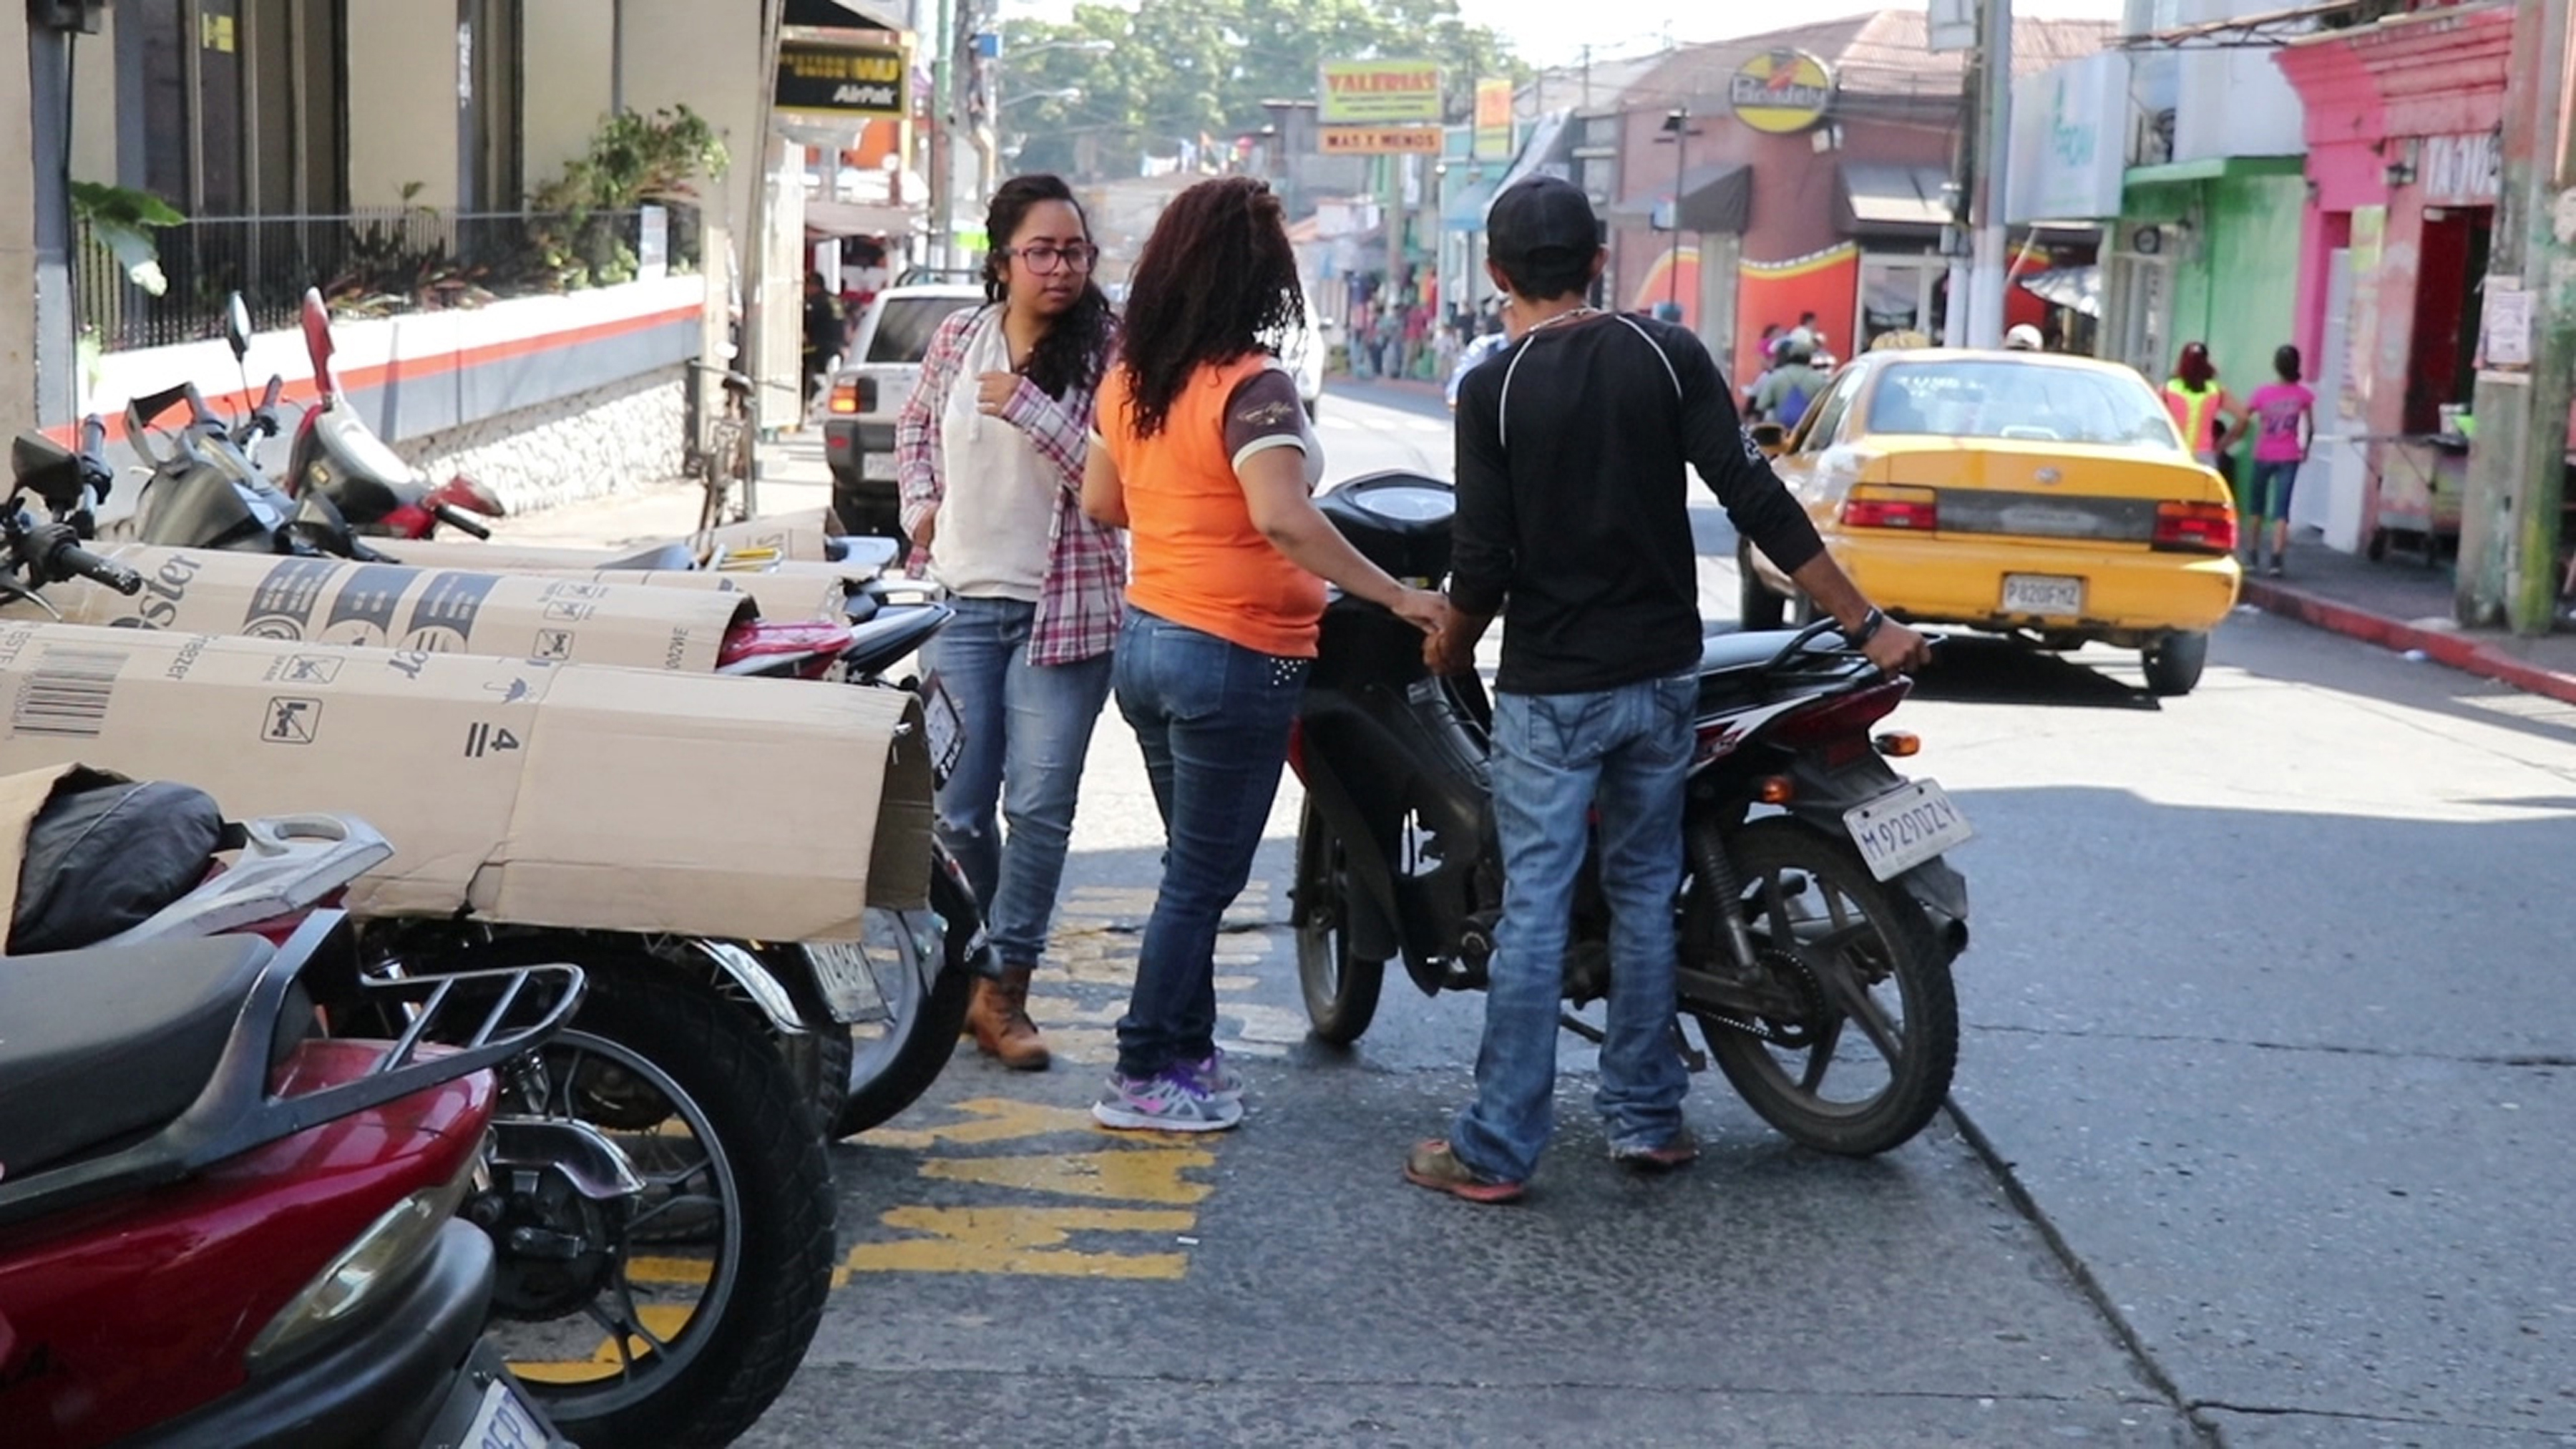 Autoridades piden no pagar a nadie, cuando se estacionan en la vía pública. (Foto Prensa Libre: Hilary Paredes)